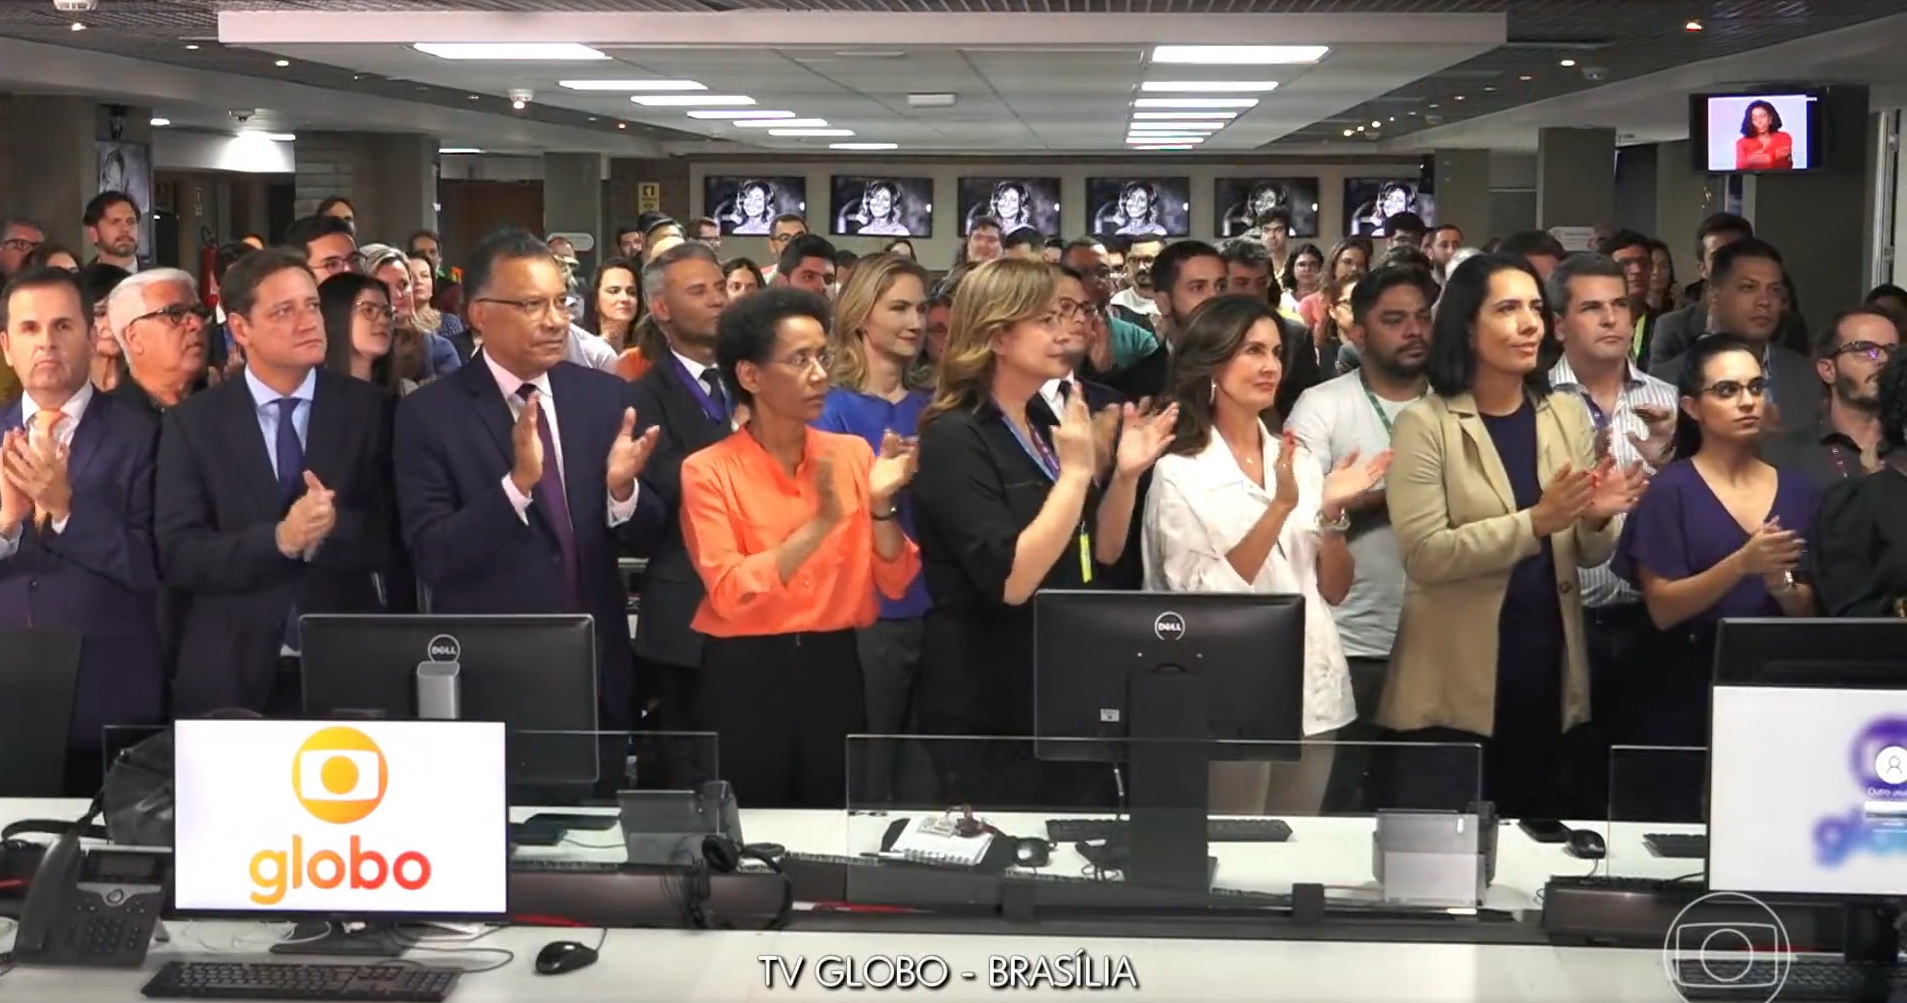 Vídeo entre lágrimas e aplausos jornalistas da TV Globo prestam homenagem à Glória Maria